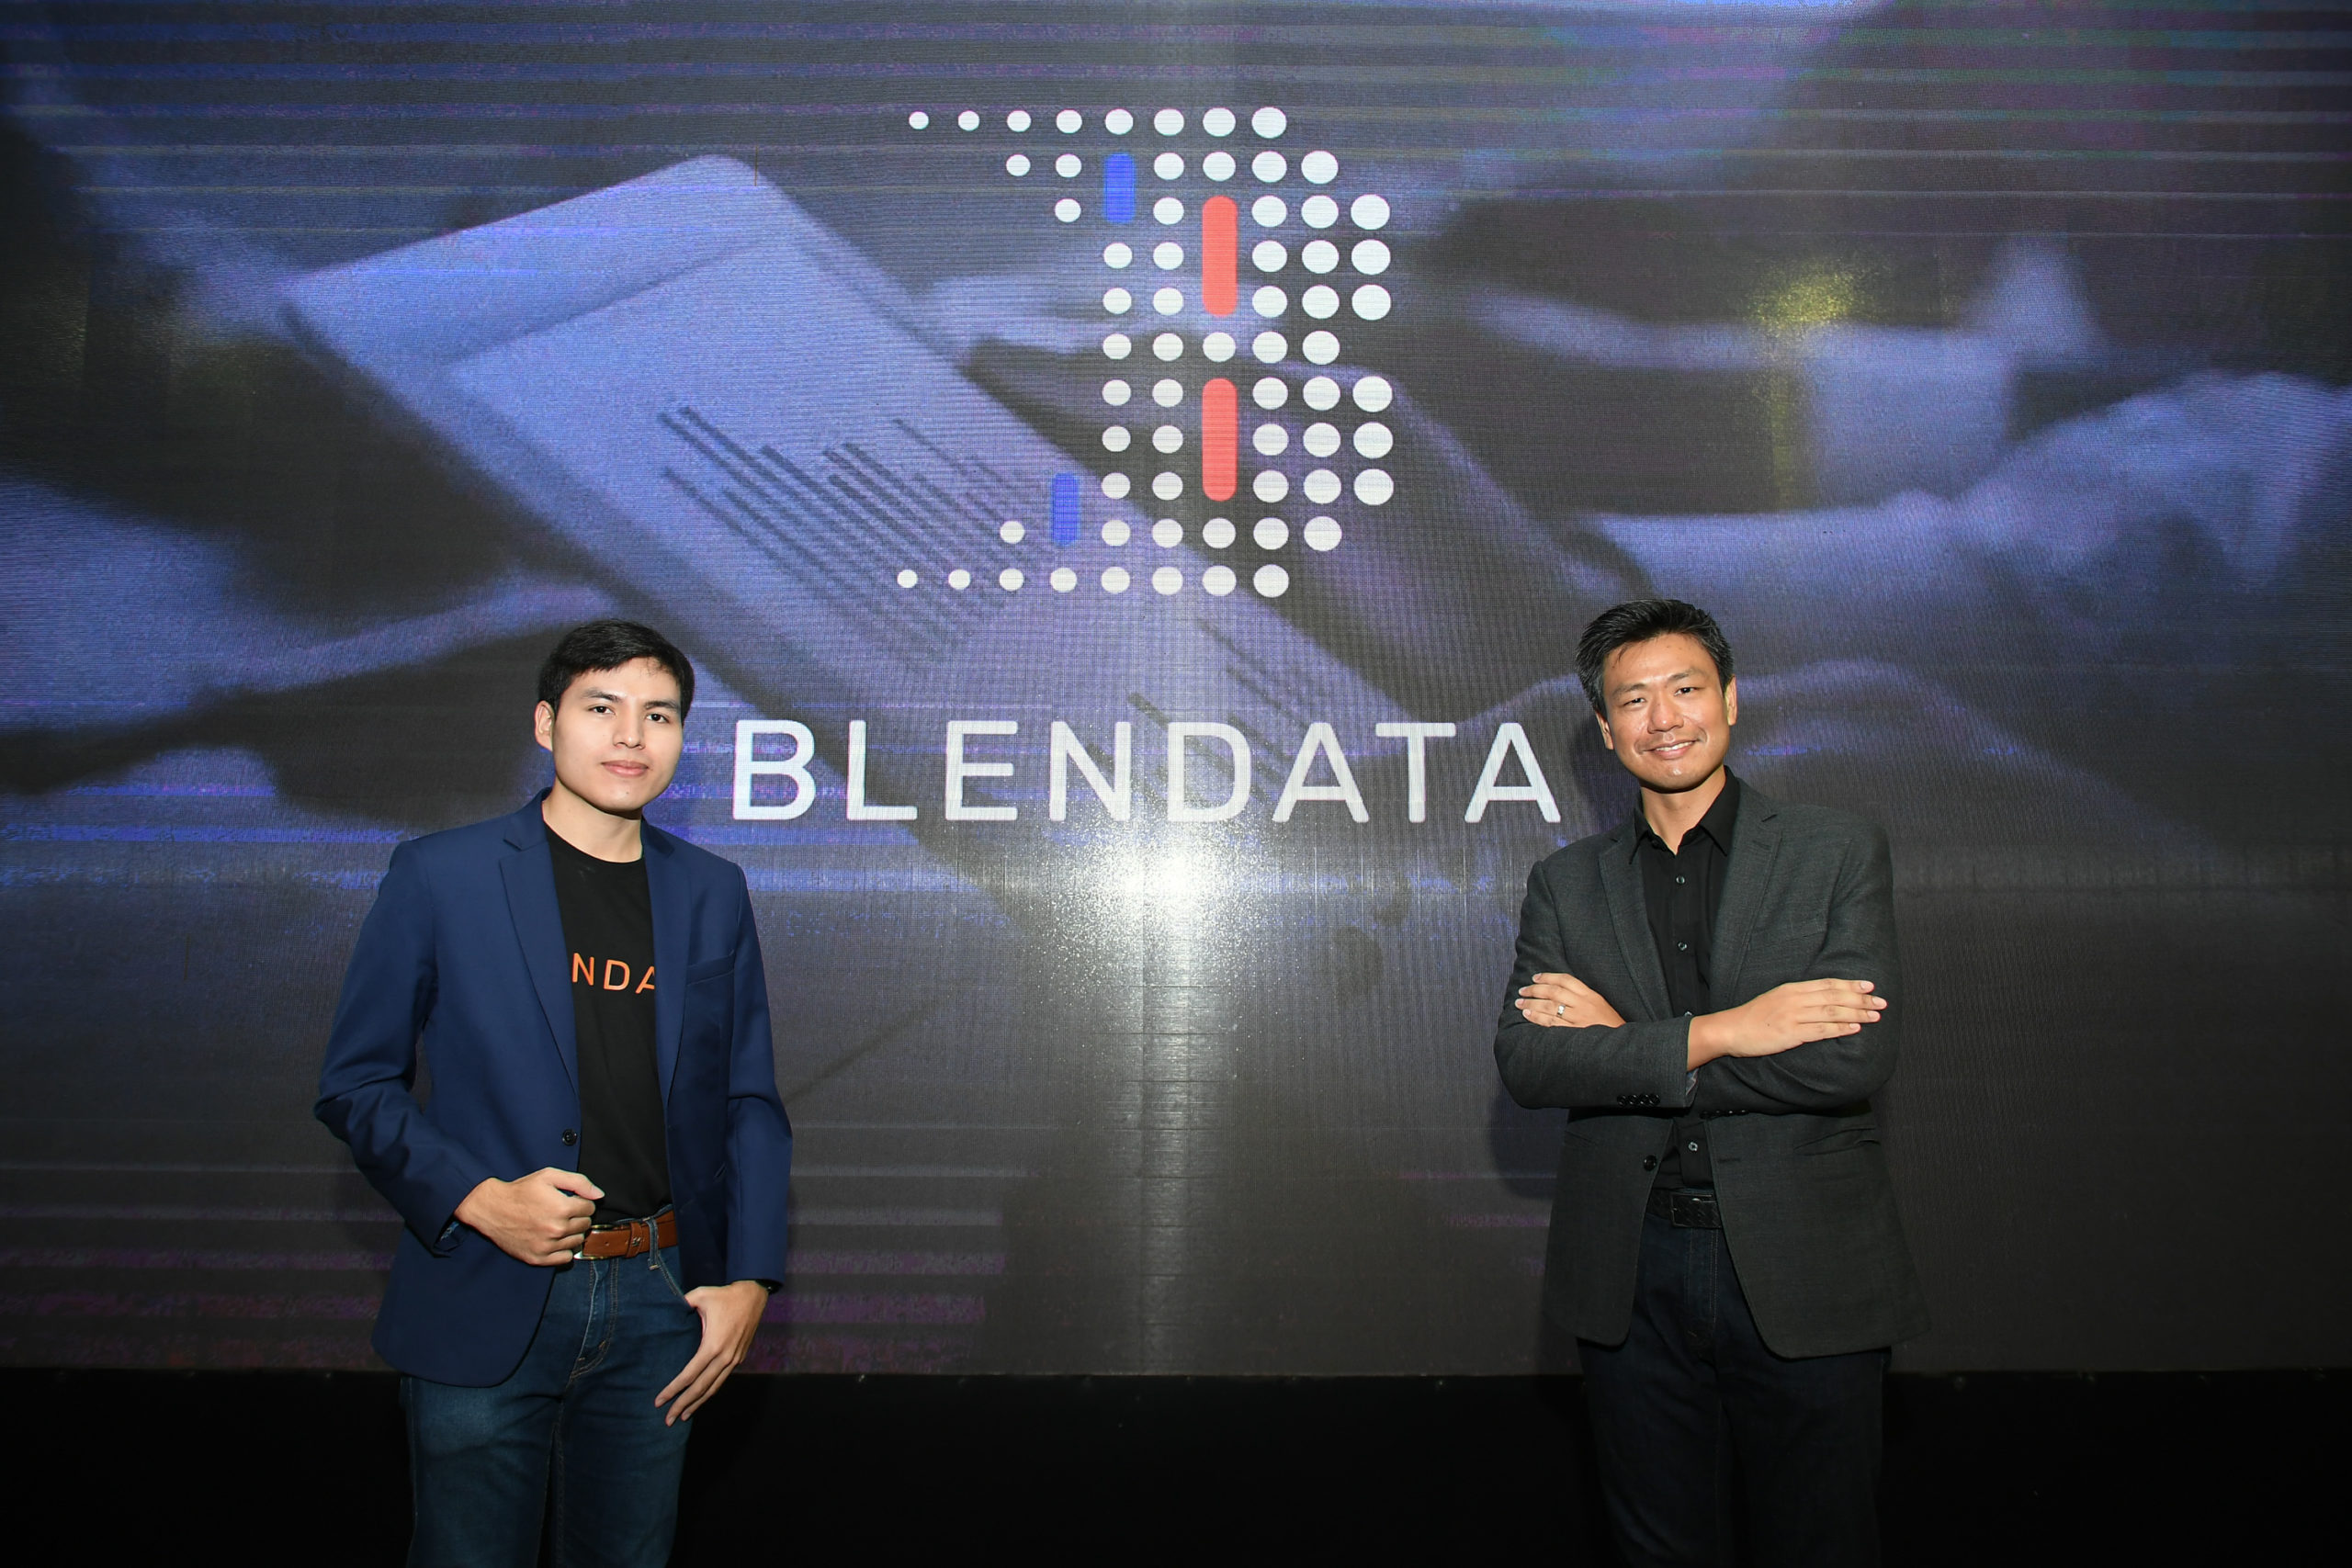 เปิดตัว Blendata แพลตฟอร์ม Big Data เจนฯใหม่ ตอบสนองทุกความต้องการของธุรกิจ ให้ทุกคนเข้าถึงข้อมูลได้ง่ายกว่า ครั้งแรกในประเทศไทย